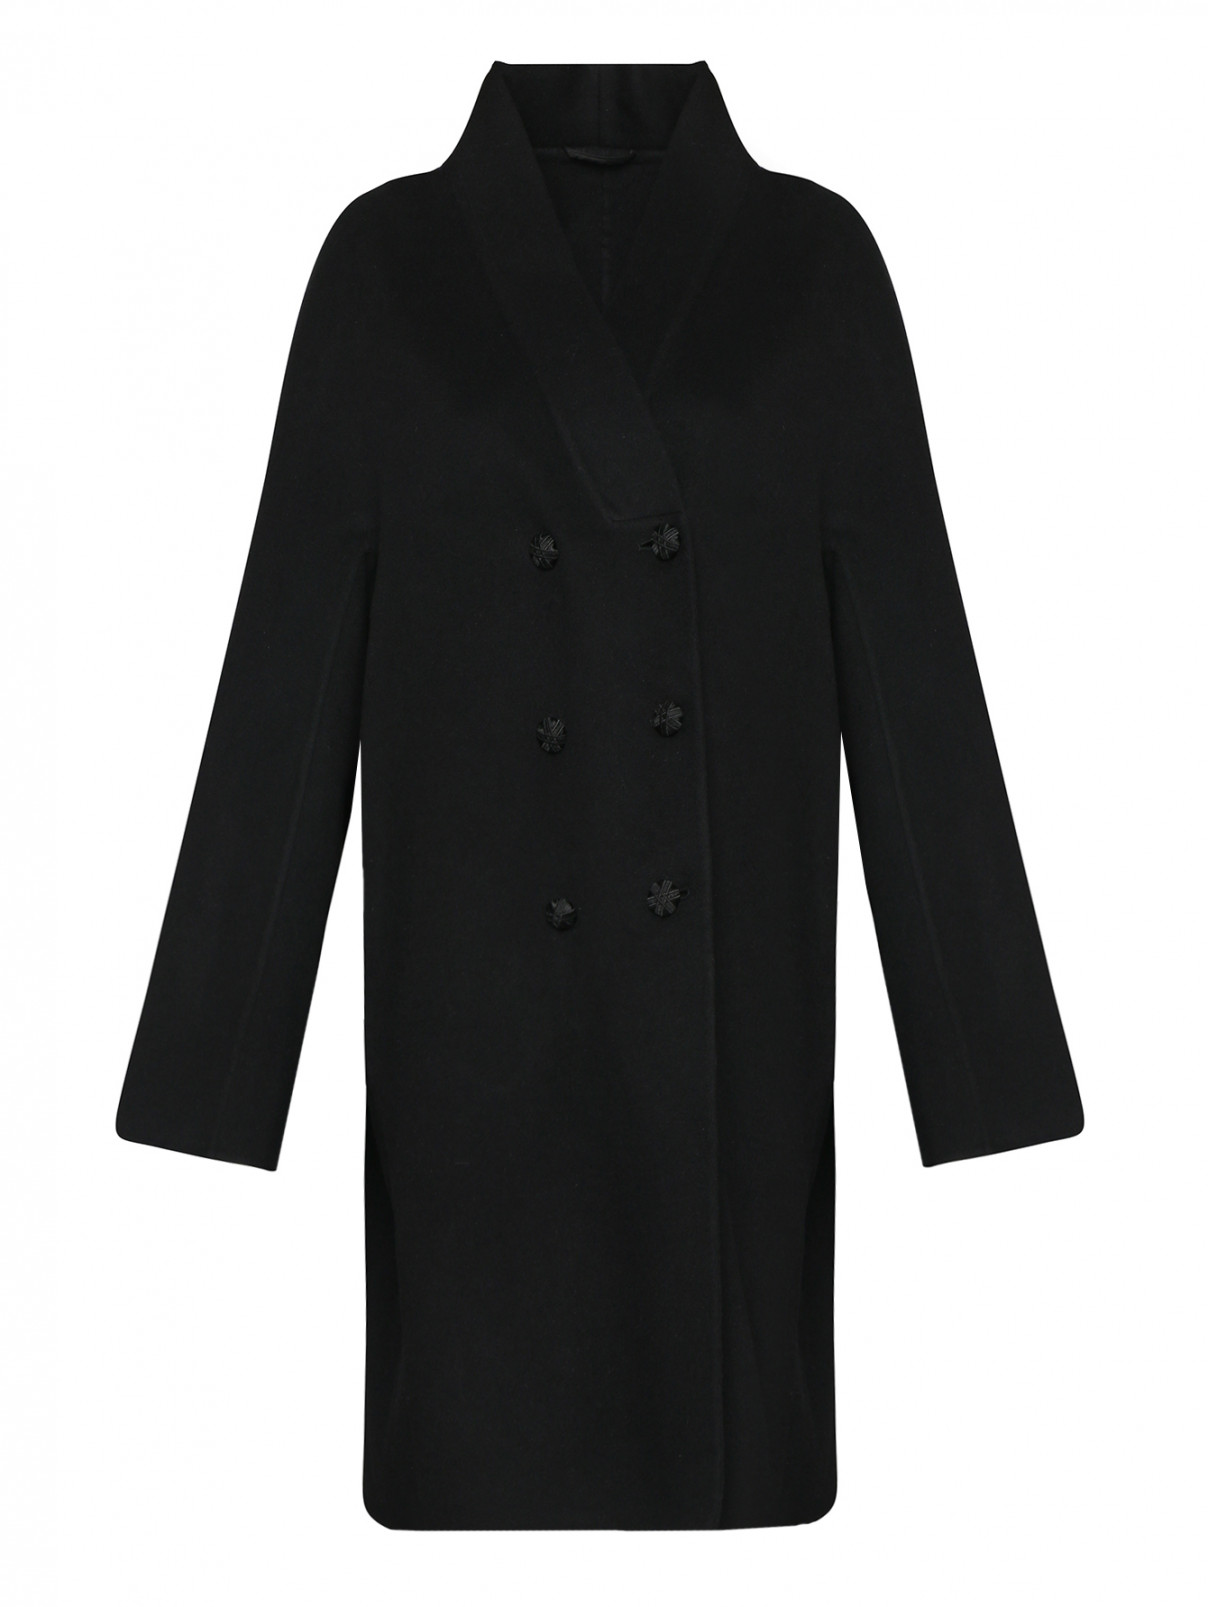 Пальто двубортное из шерсти Ermanno Scervino  –  Общий вид  – Цвет:  Черный